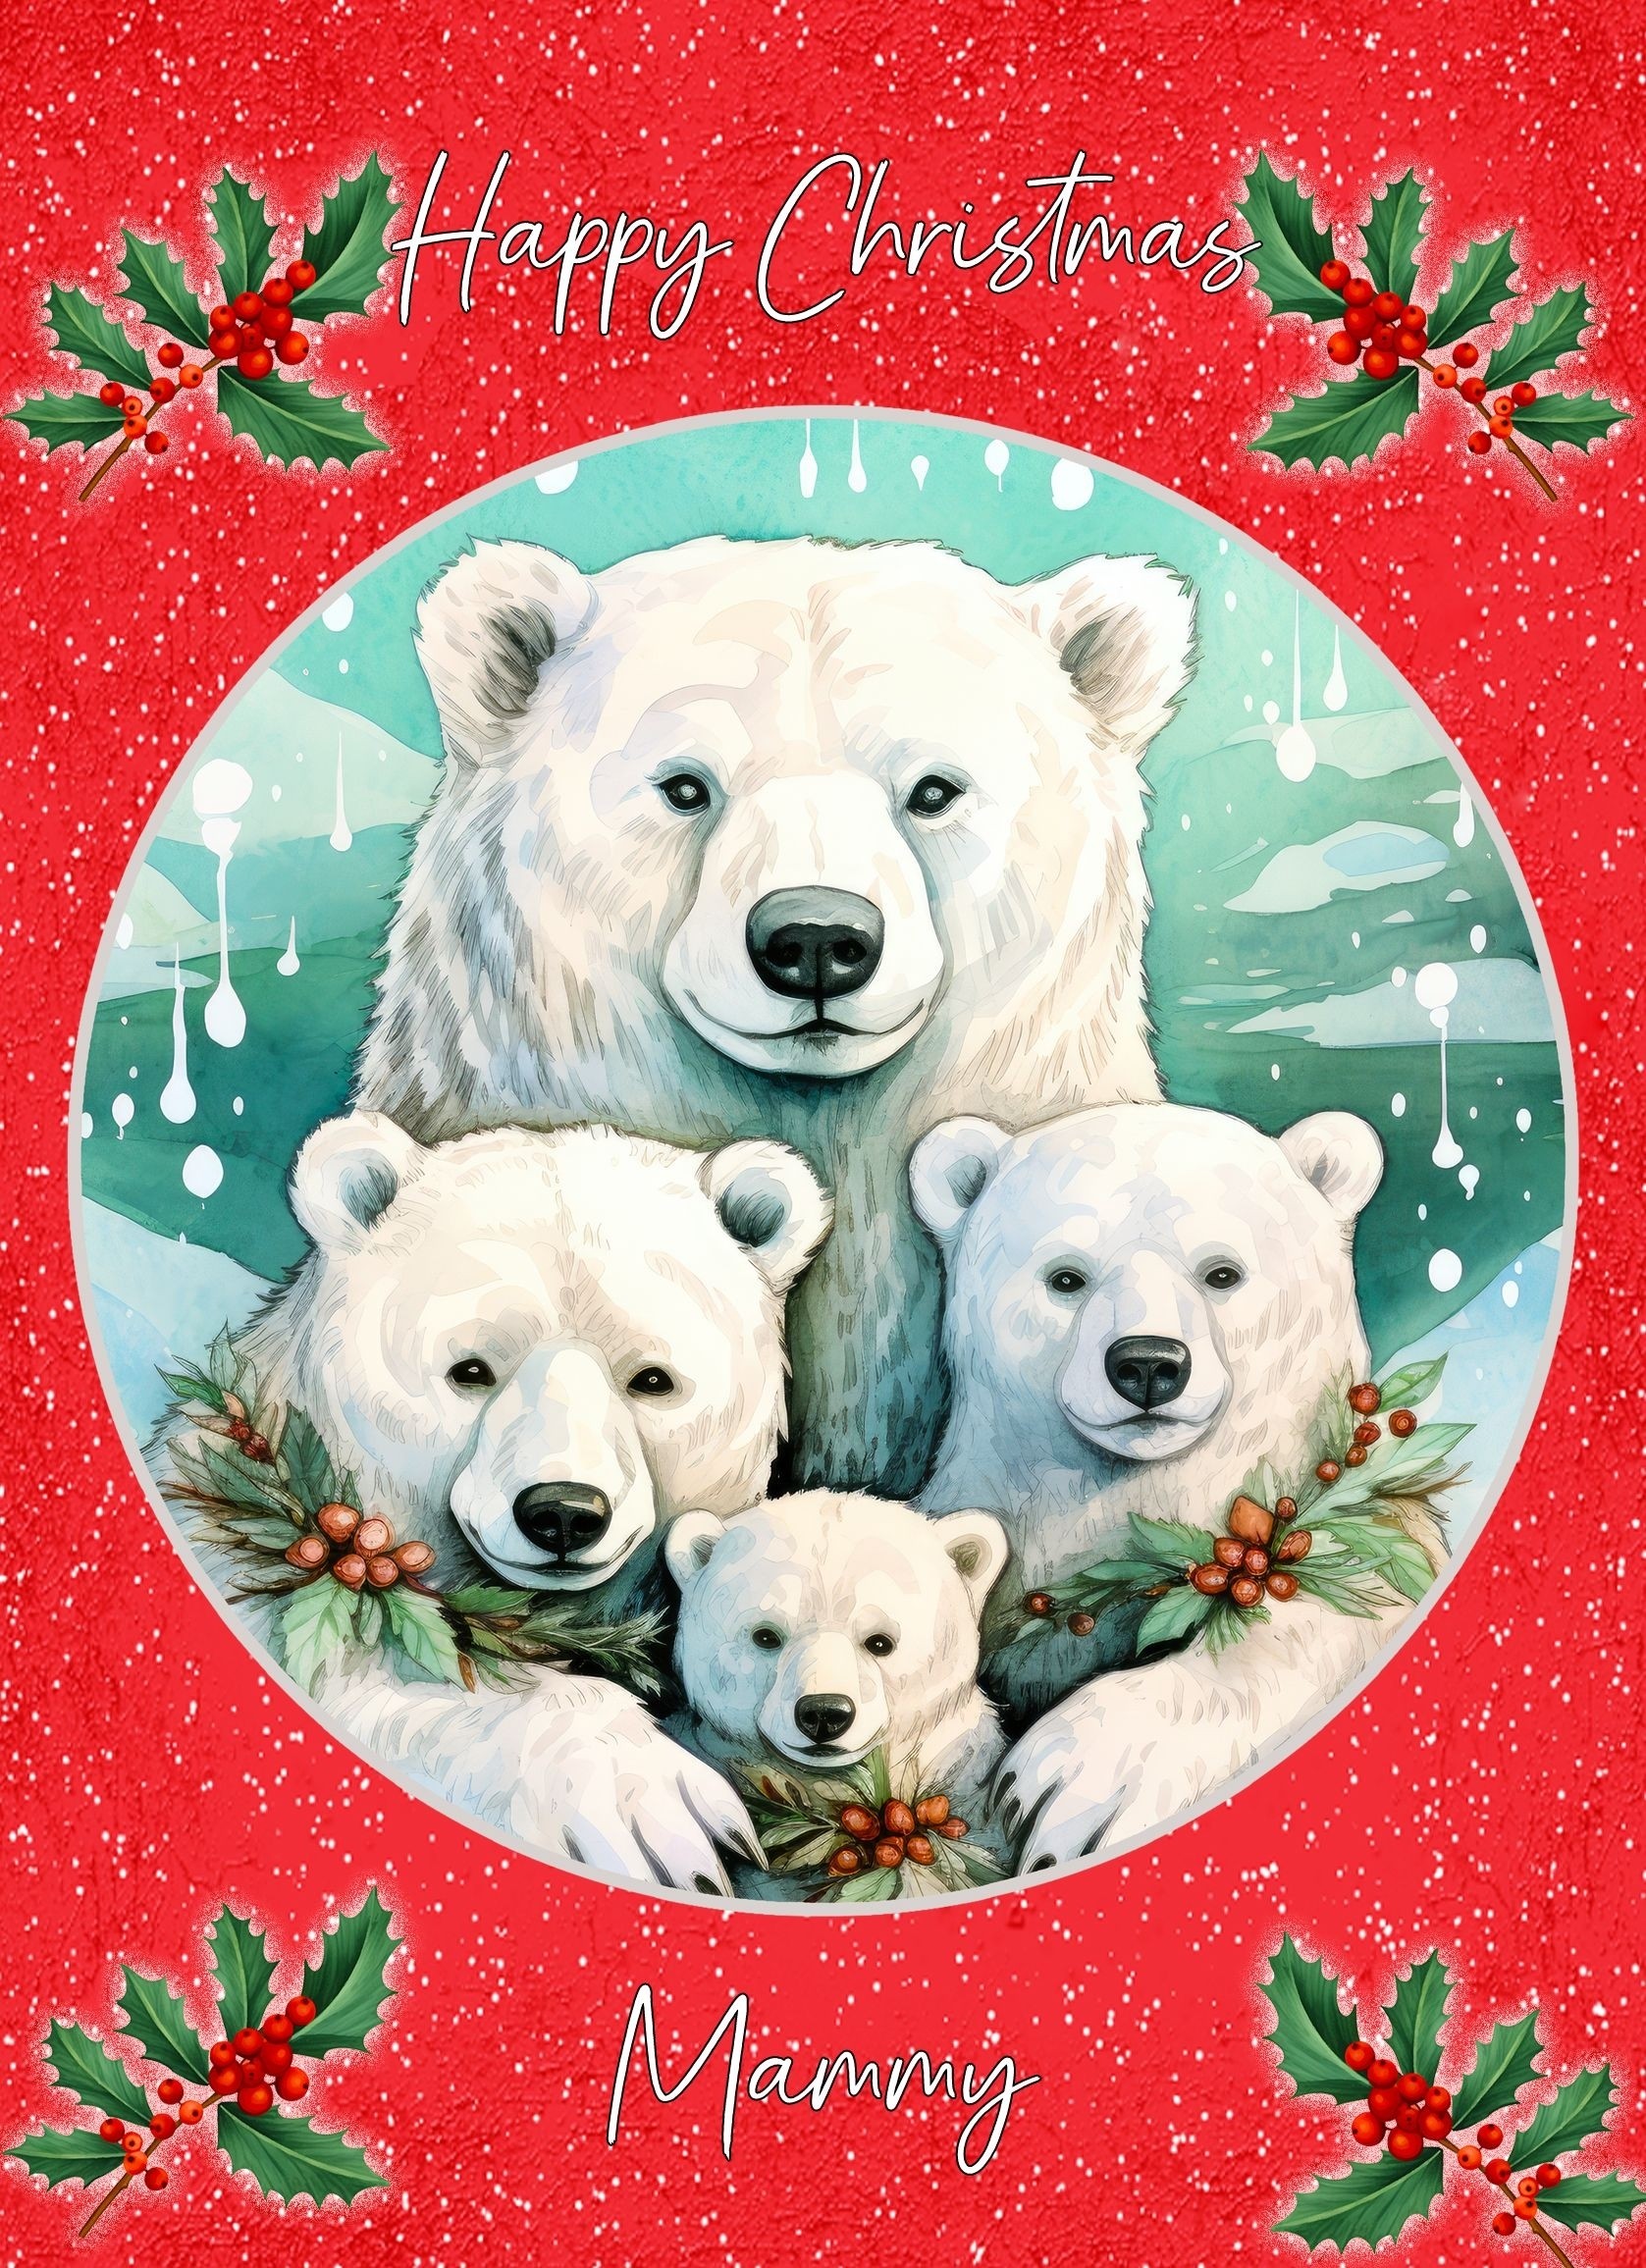 Christmas Card For Mammy (Globe, Polar Bear Family)